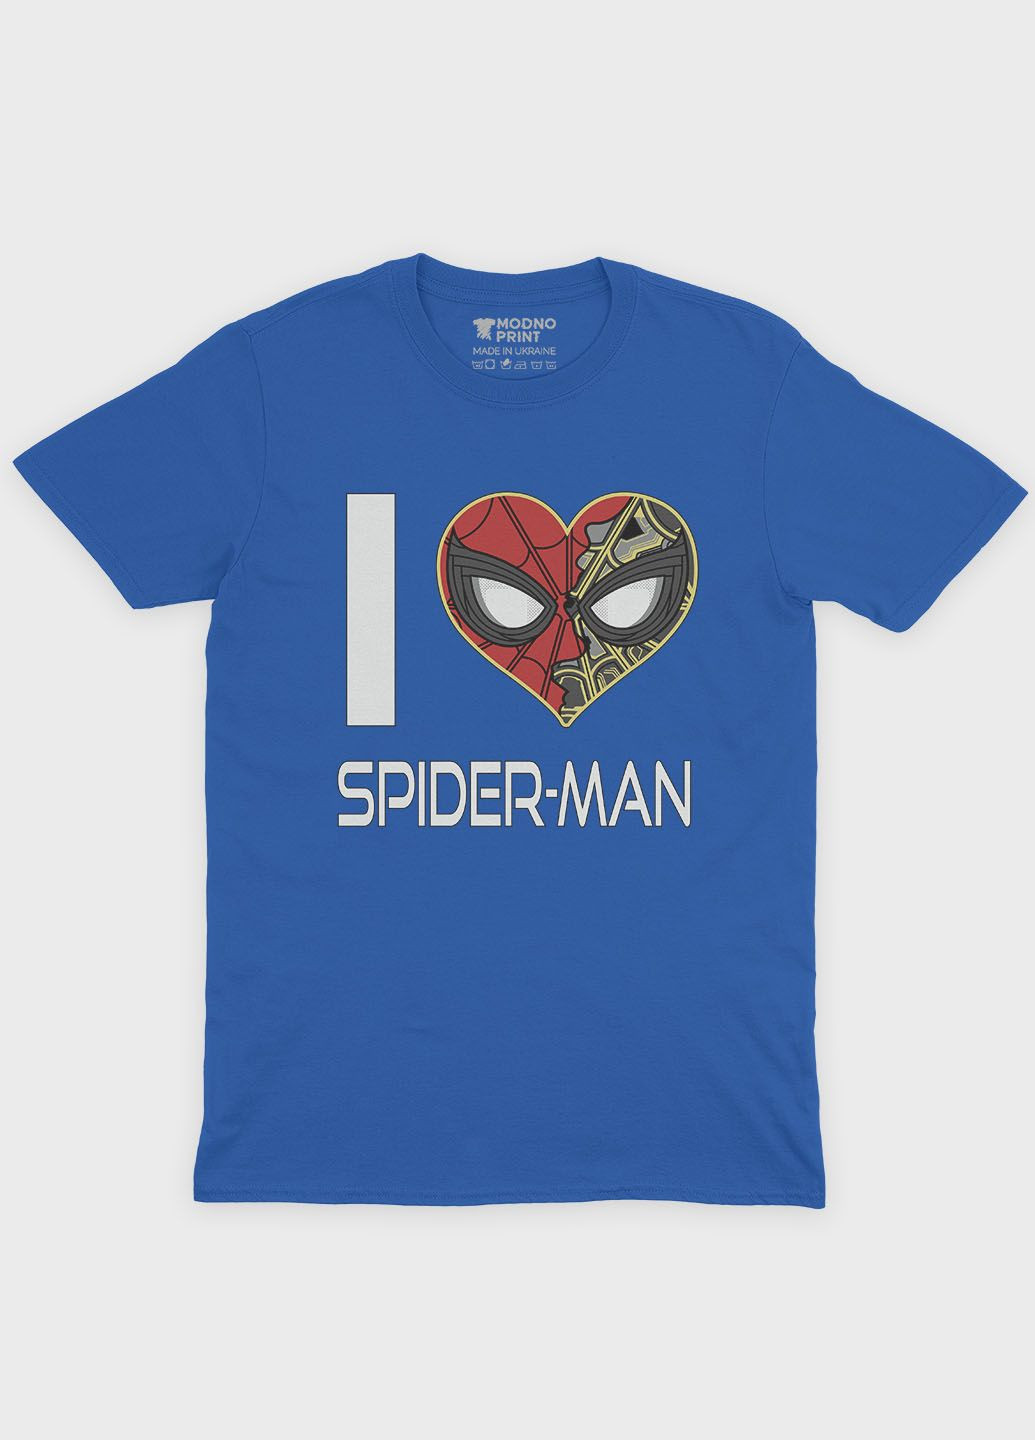 Синяя демисезонная футболка для девочки с принтом супергероя - человек-паук (ts001-1-grr-006-014-091-g) Modno